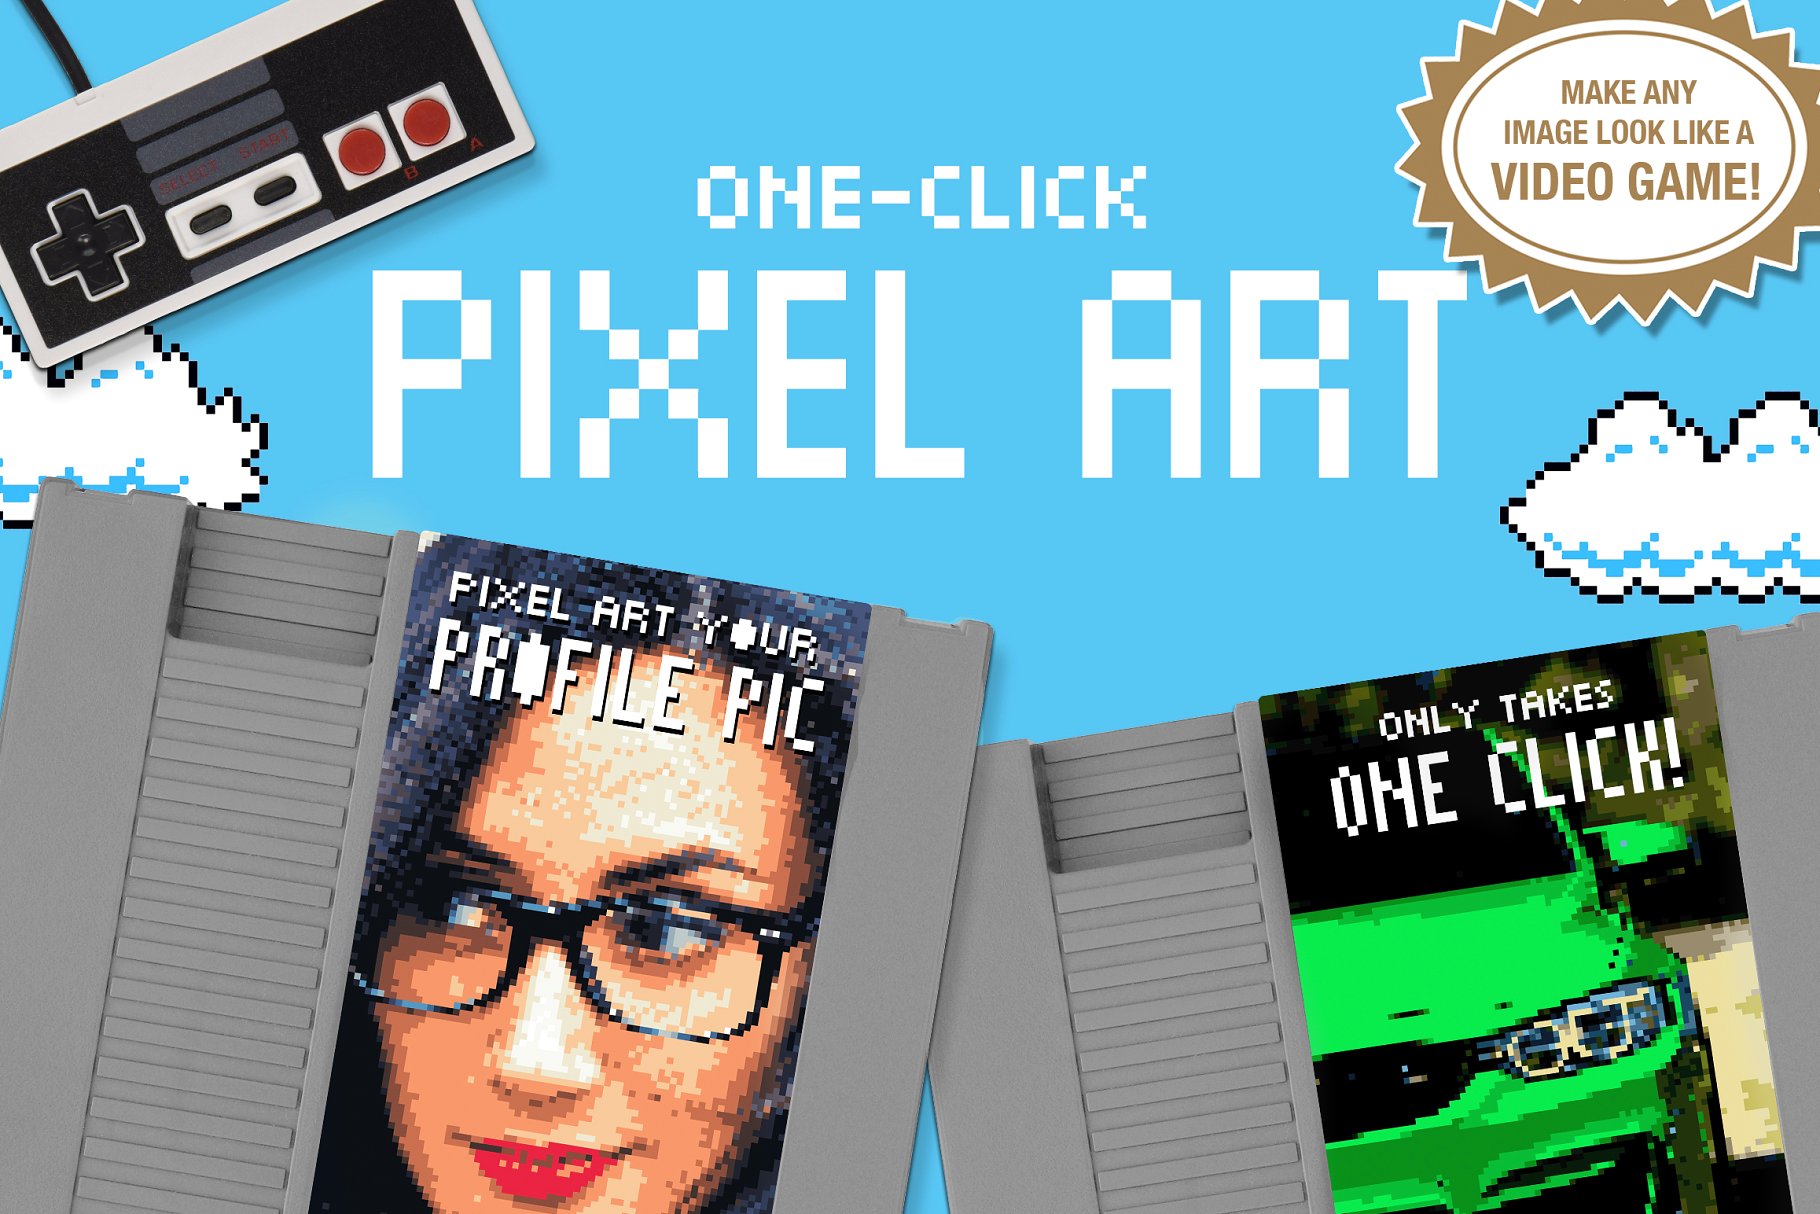 像素效果PS动作文件 Pixel Art One Click